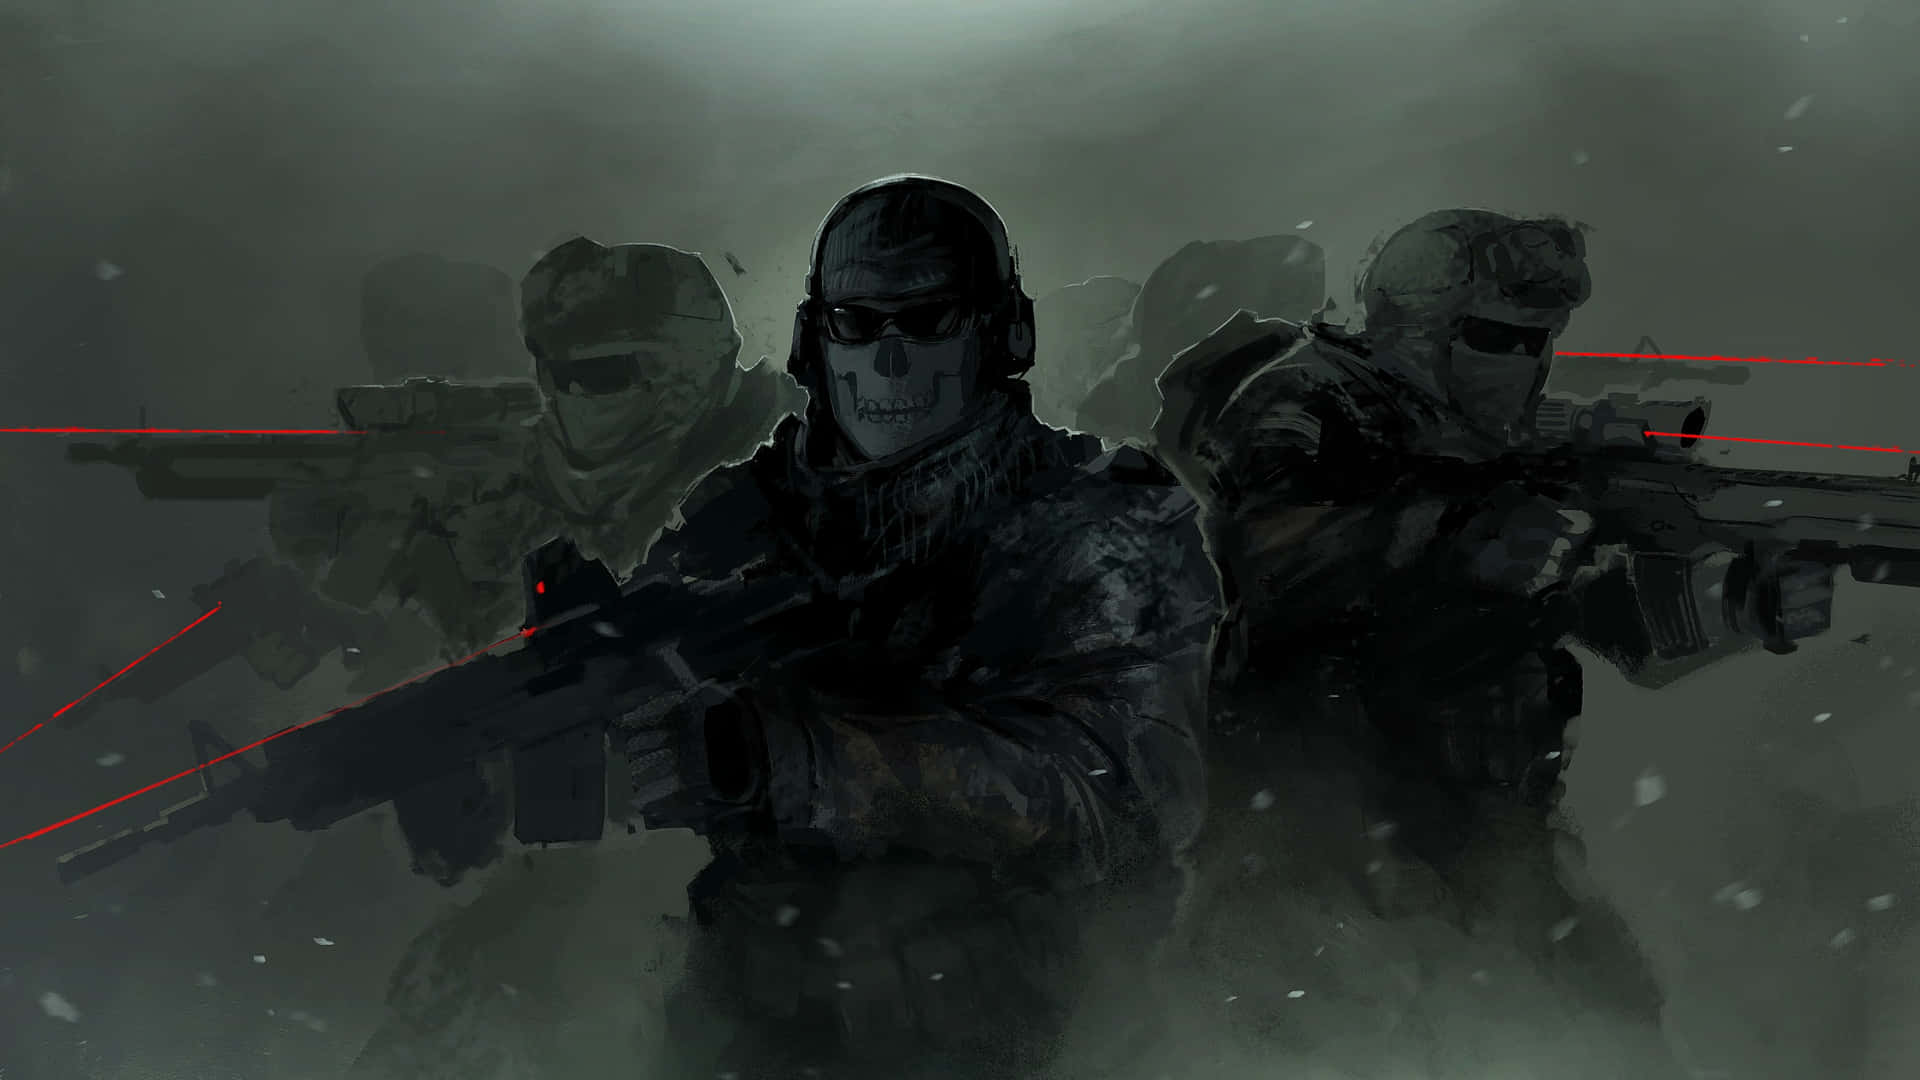 Intensoescenario De Batalla En El Juego De Disparos En Primera Persona Call Of Duty. Fondo de pantalla